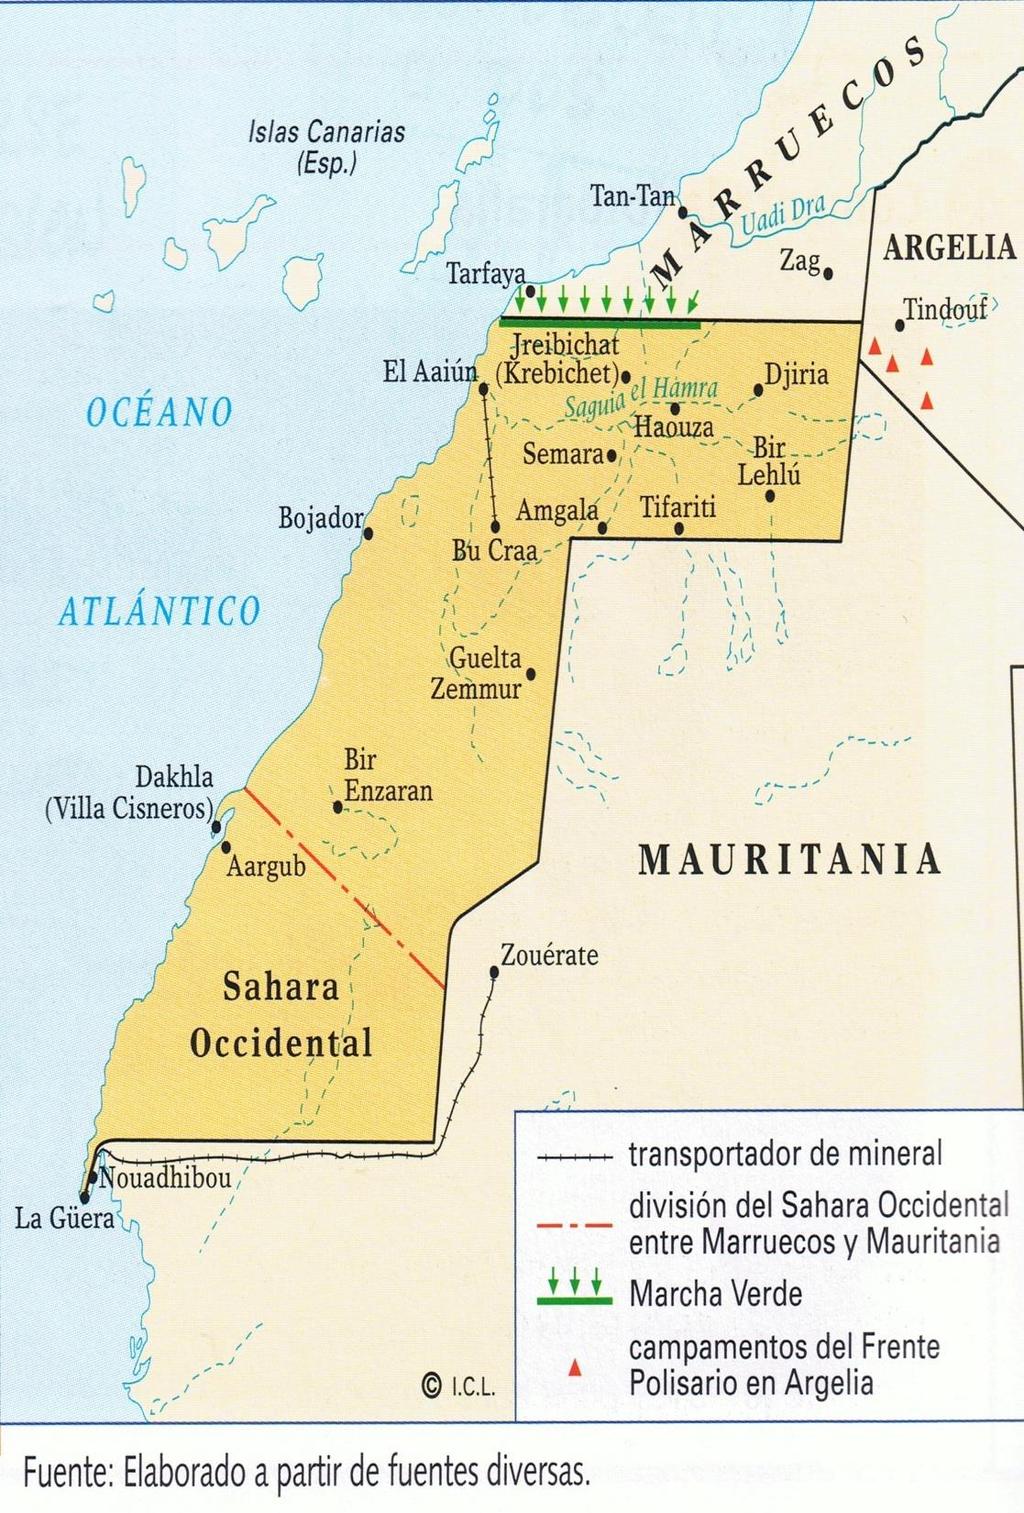 Marcha verde, noviembre 1975 El ejecutivo español para evitar el conflicto armado, decidió claudicar y ceder el territorio a Marruecos y Mauritania.